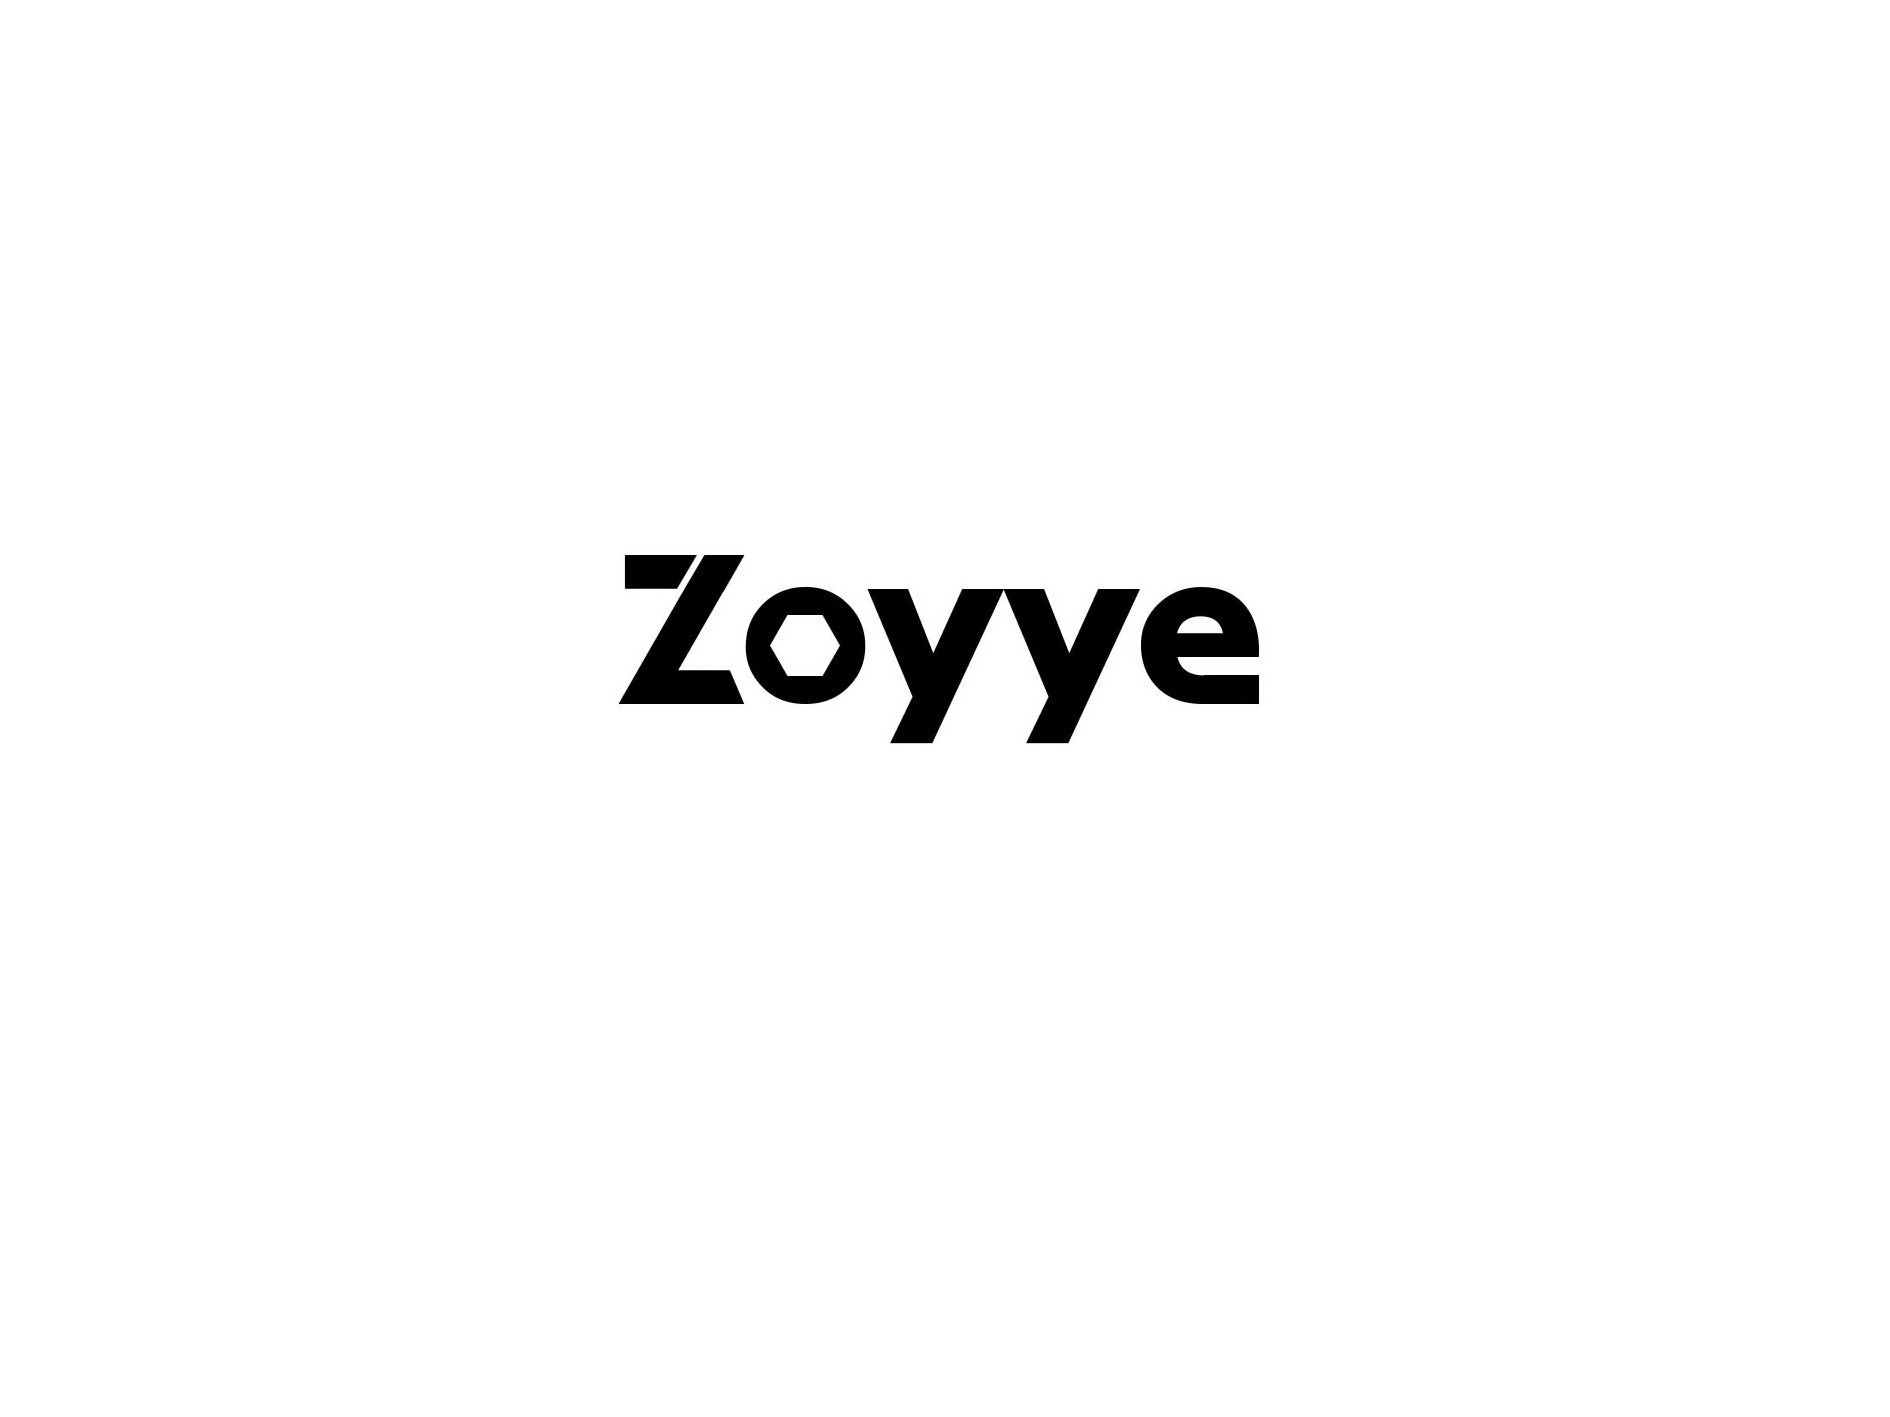  ZOYYE